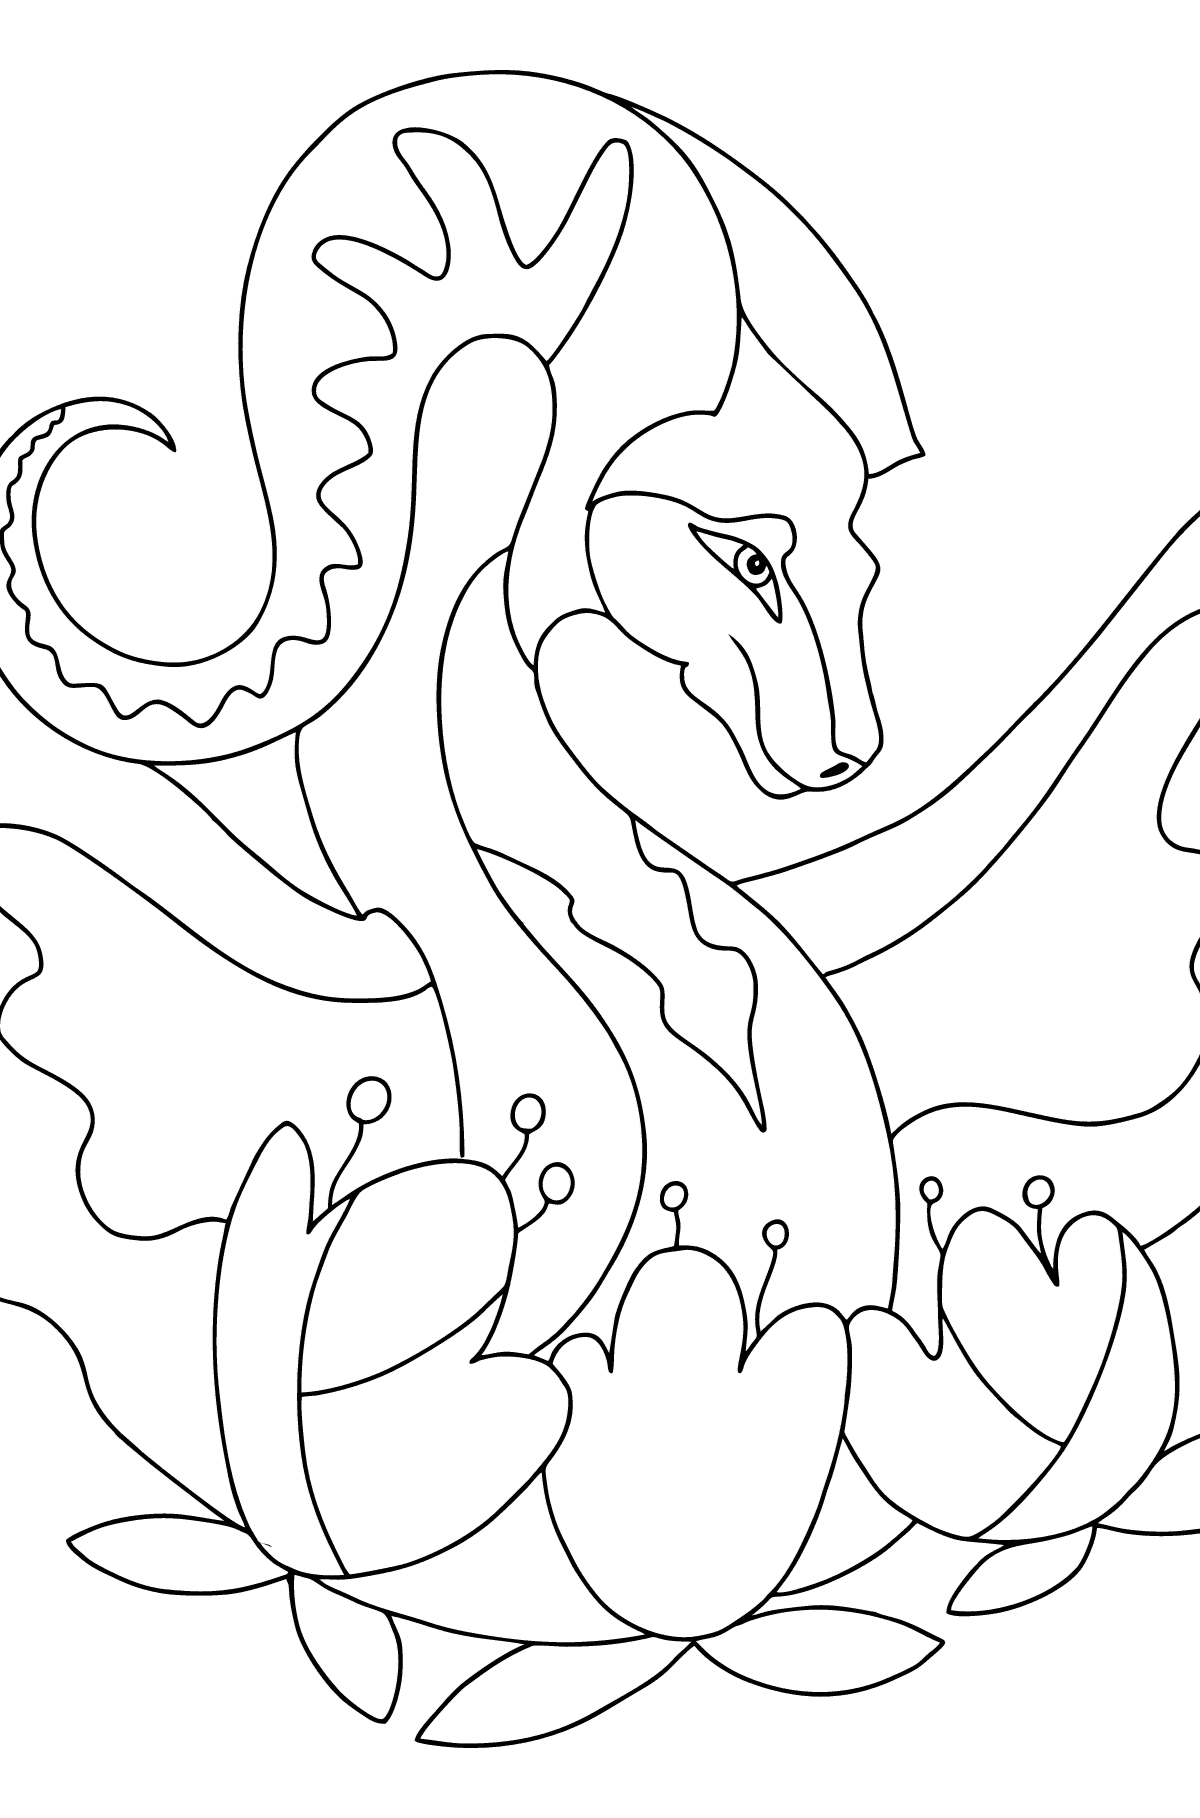 Coloriage Dragon coloré (difficile) - Coloriages pour les Enfants